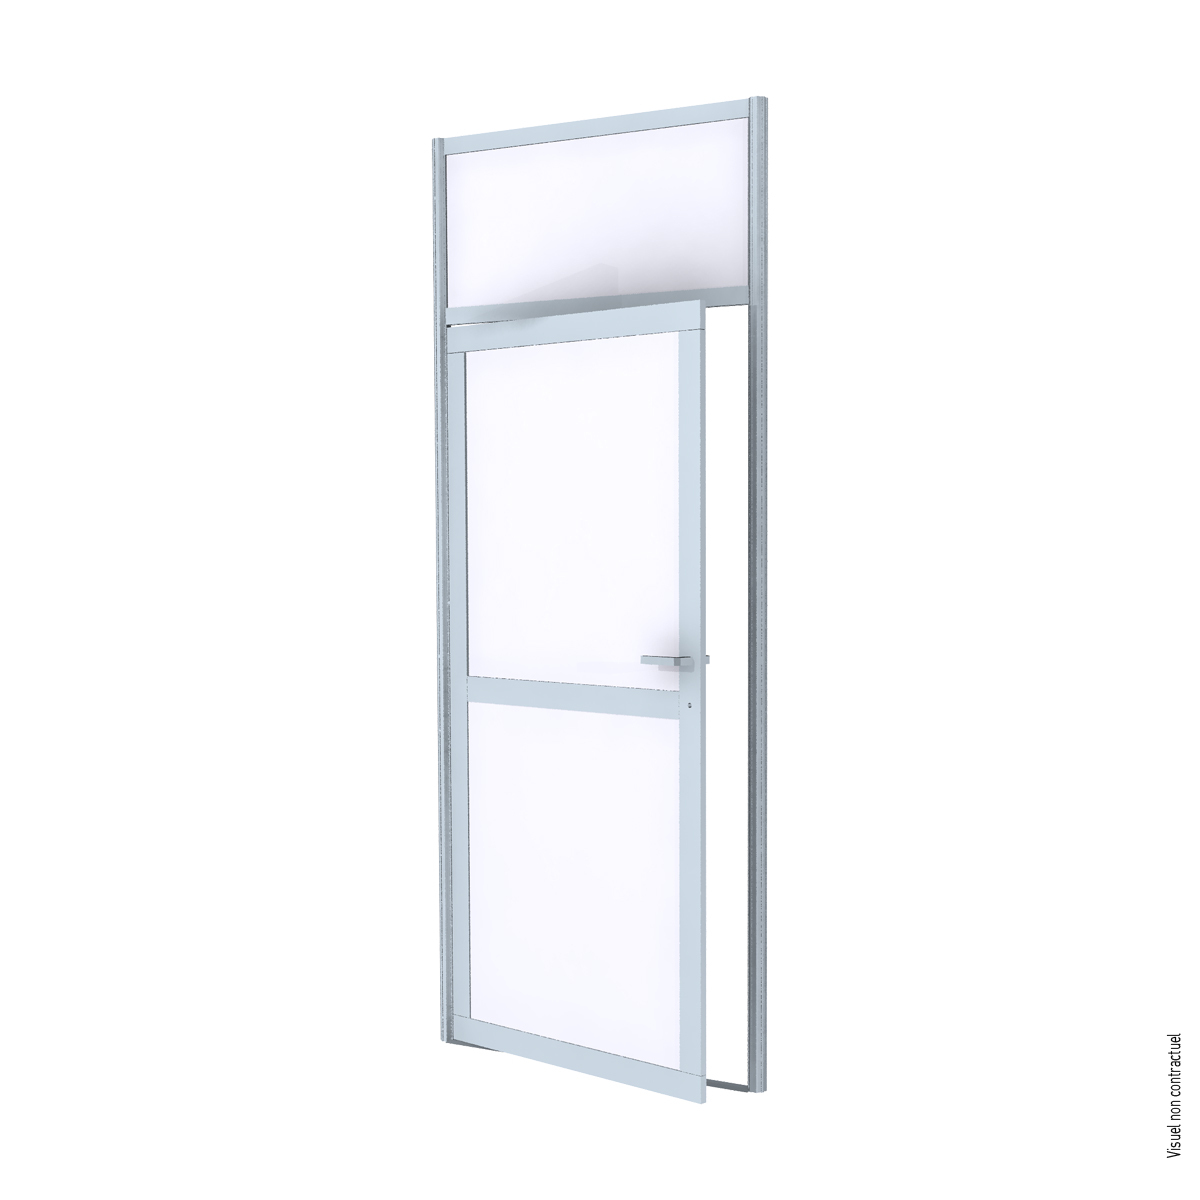 Single aluminum frame door with melamine infill - White